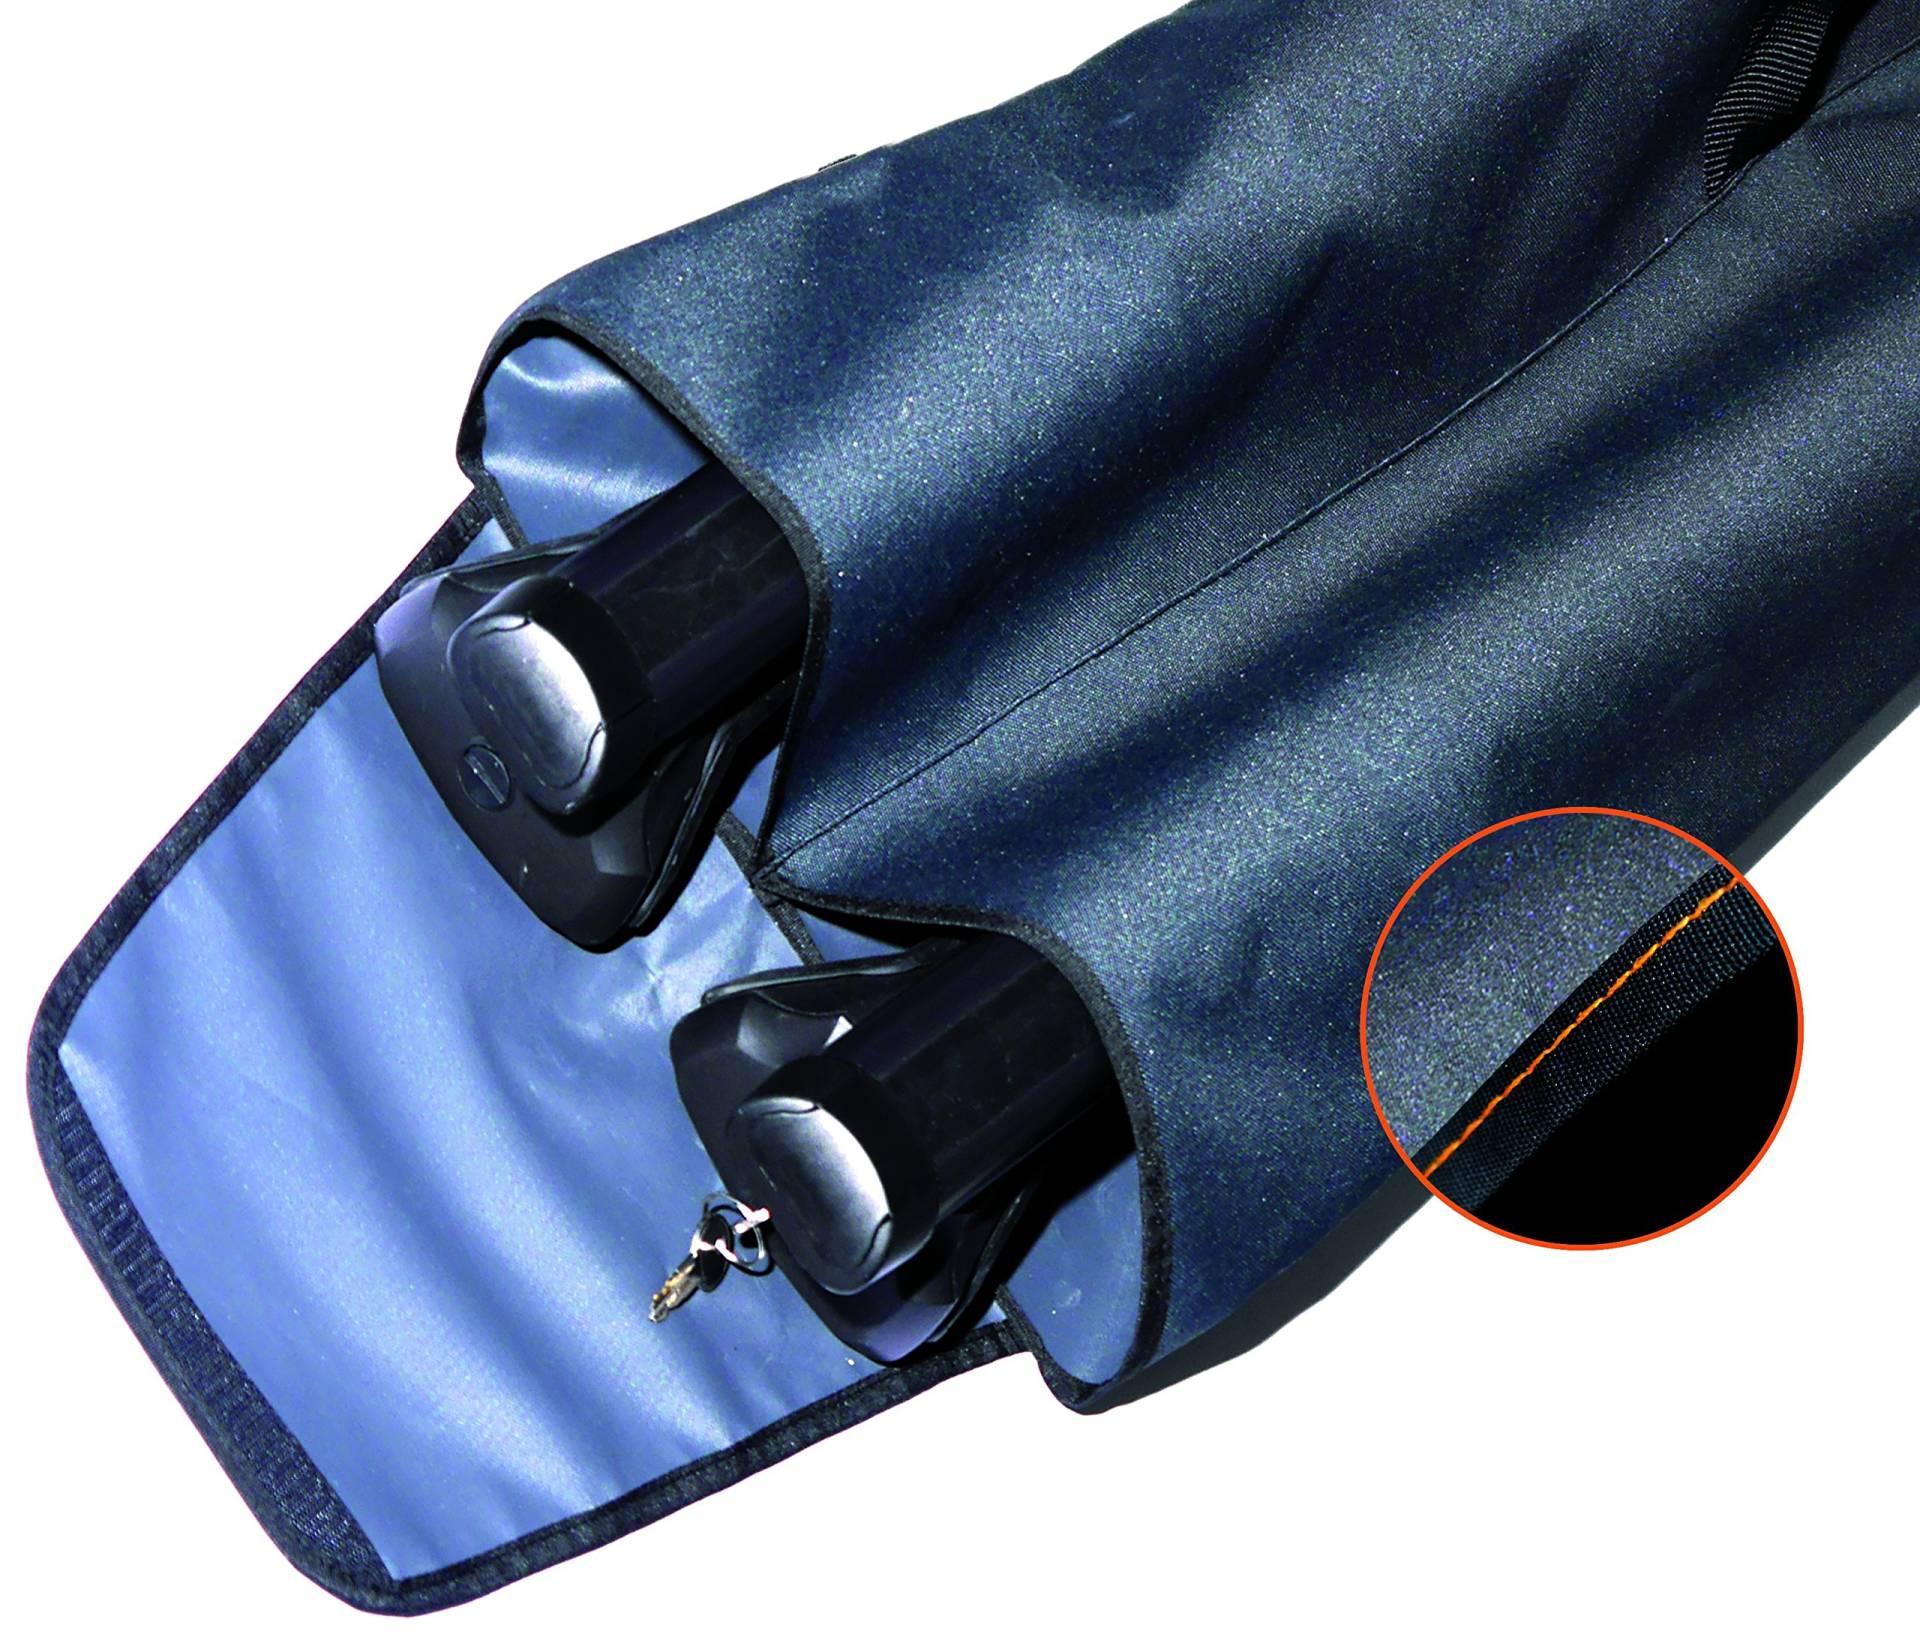 LANCO Automotive Premium Tasche für Relingträger | LI-4914 |Schützt vor Kratzer und Staub | mit Tragegriff |Verschliessbar mit Klettverschluss |Qualität Made in EU von Lanco Automotive